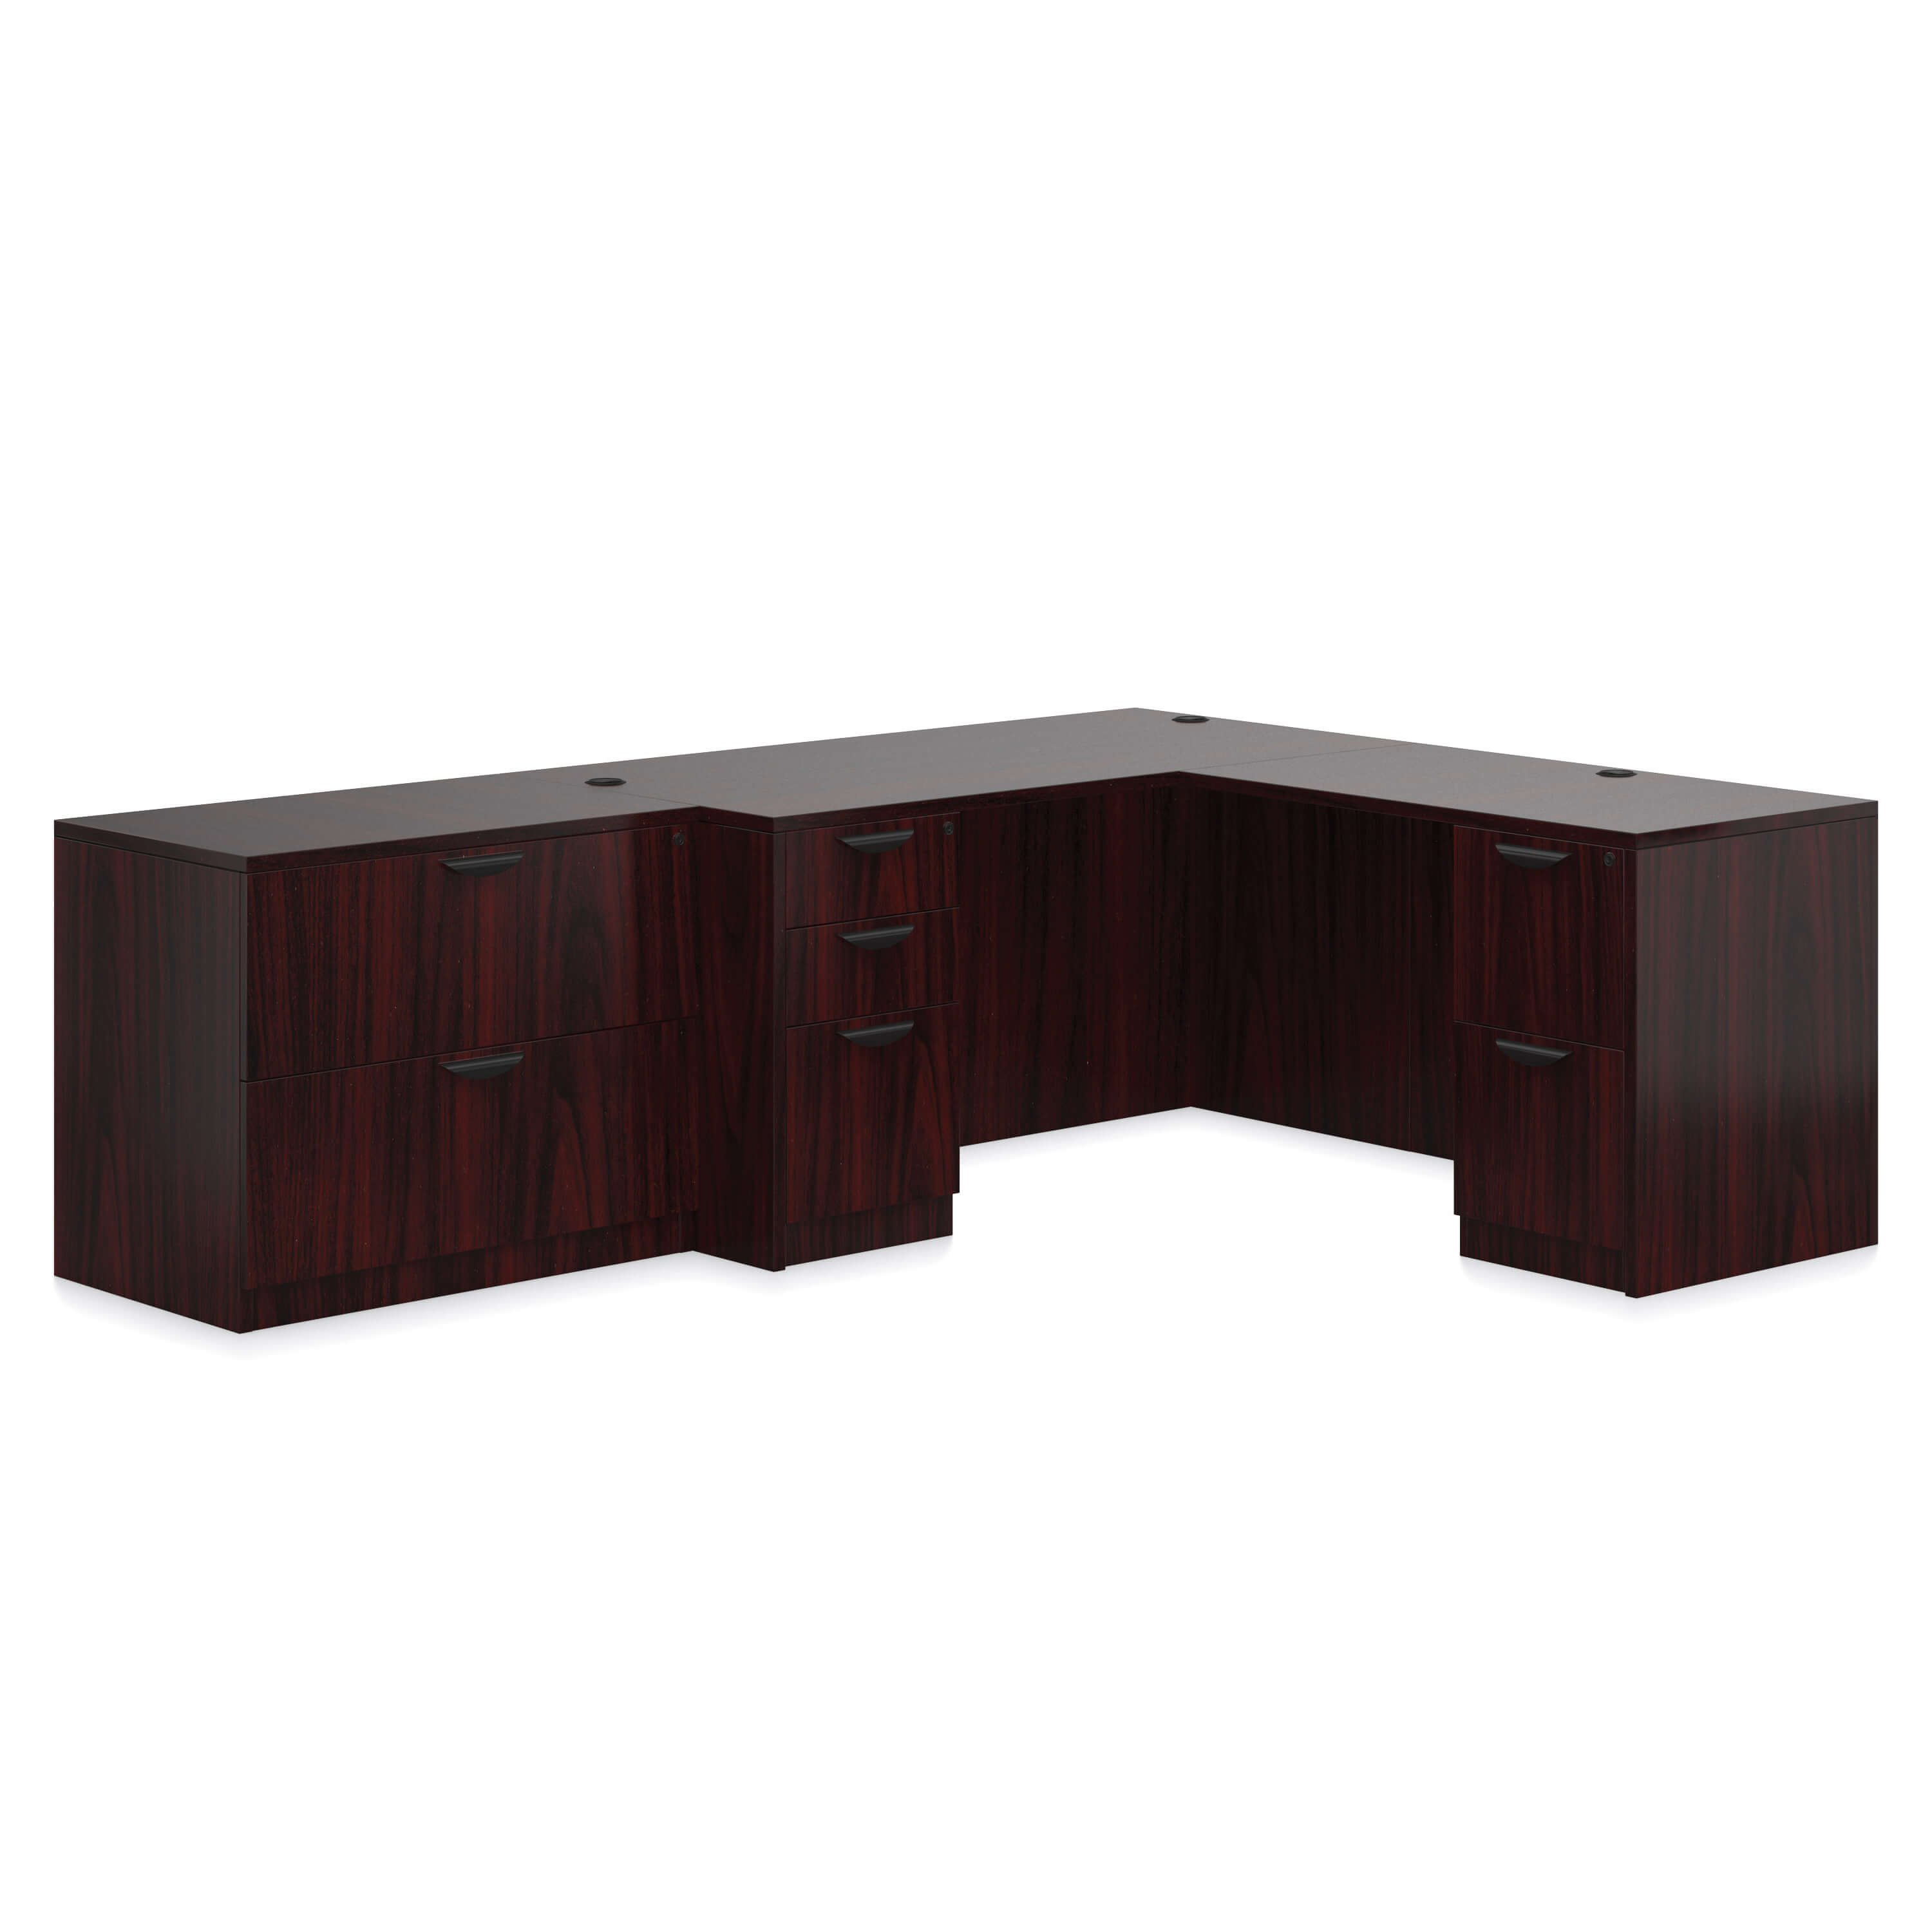 Affordable office furniture desks CUB SL N AML GTO 1